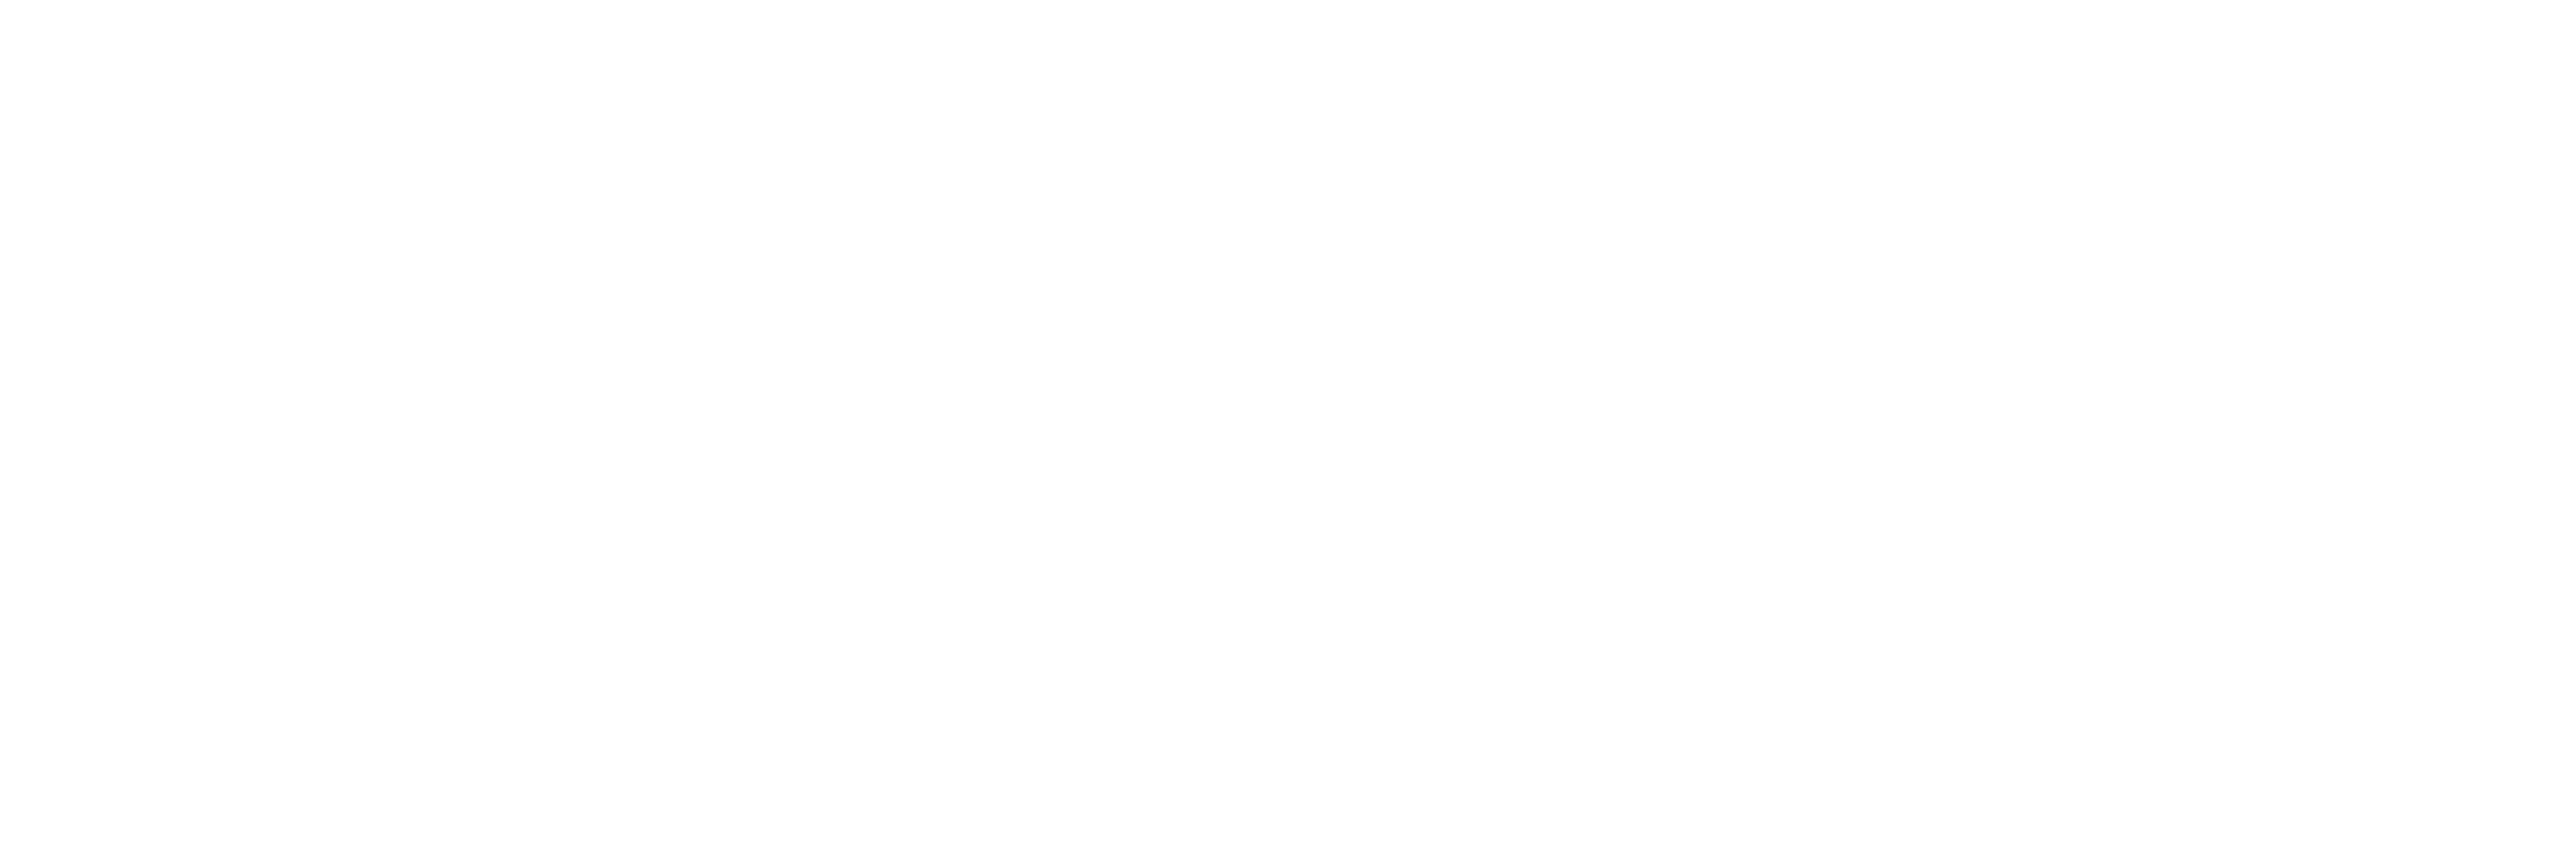 Alchemax Analytics